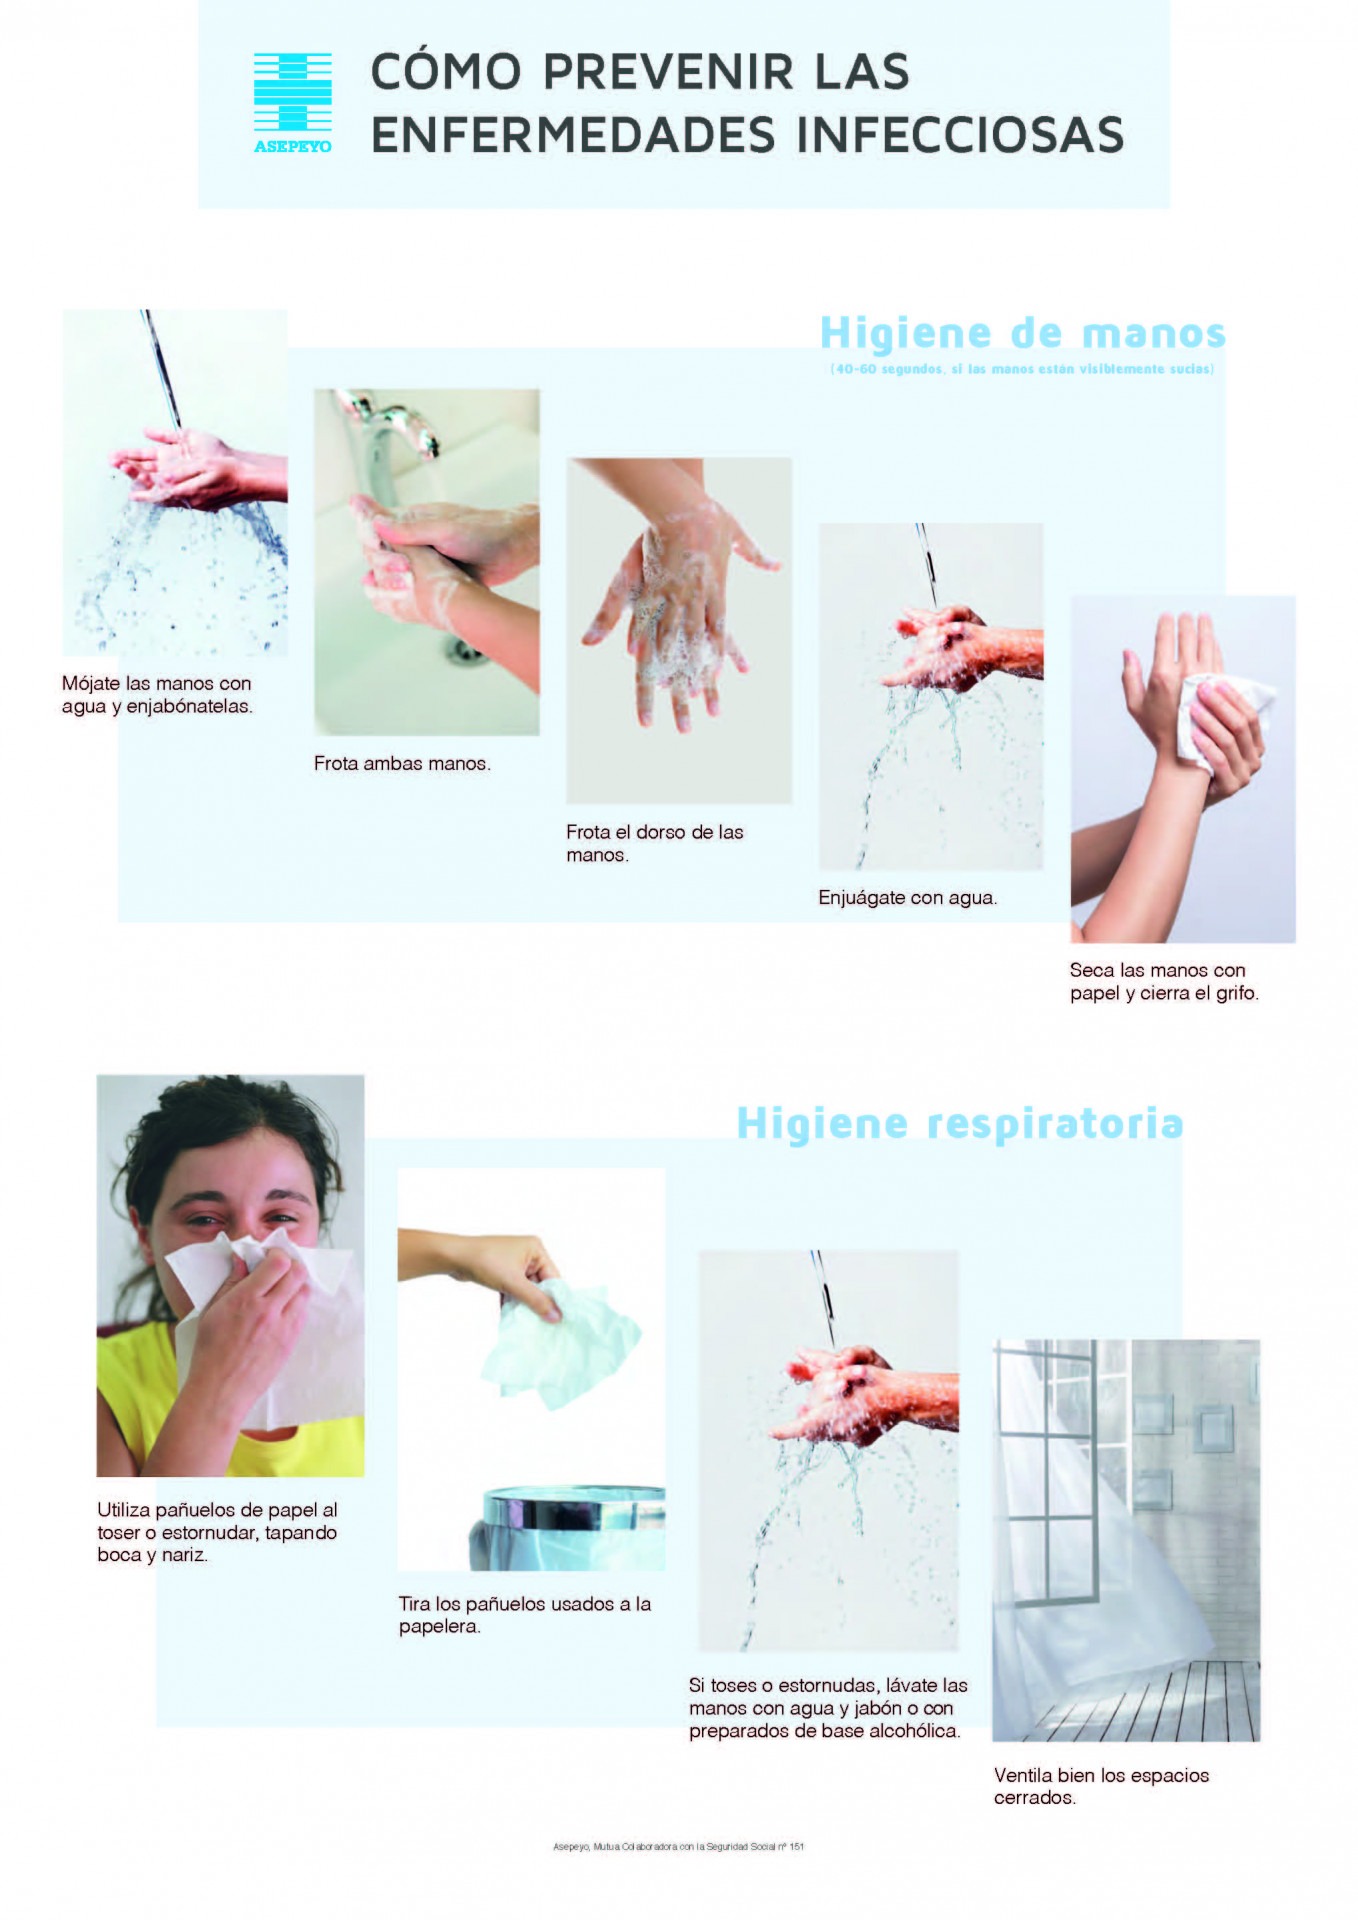 Jugar con trolebús Imaginación Lavado de manos para evitar enfermedades infecciosas